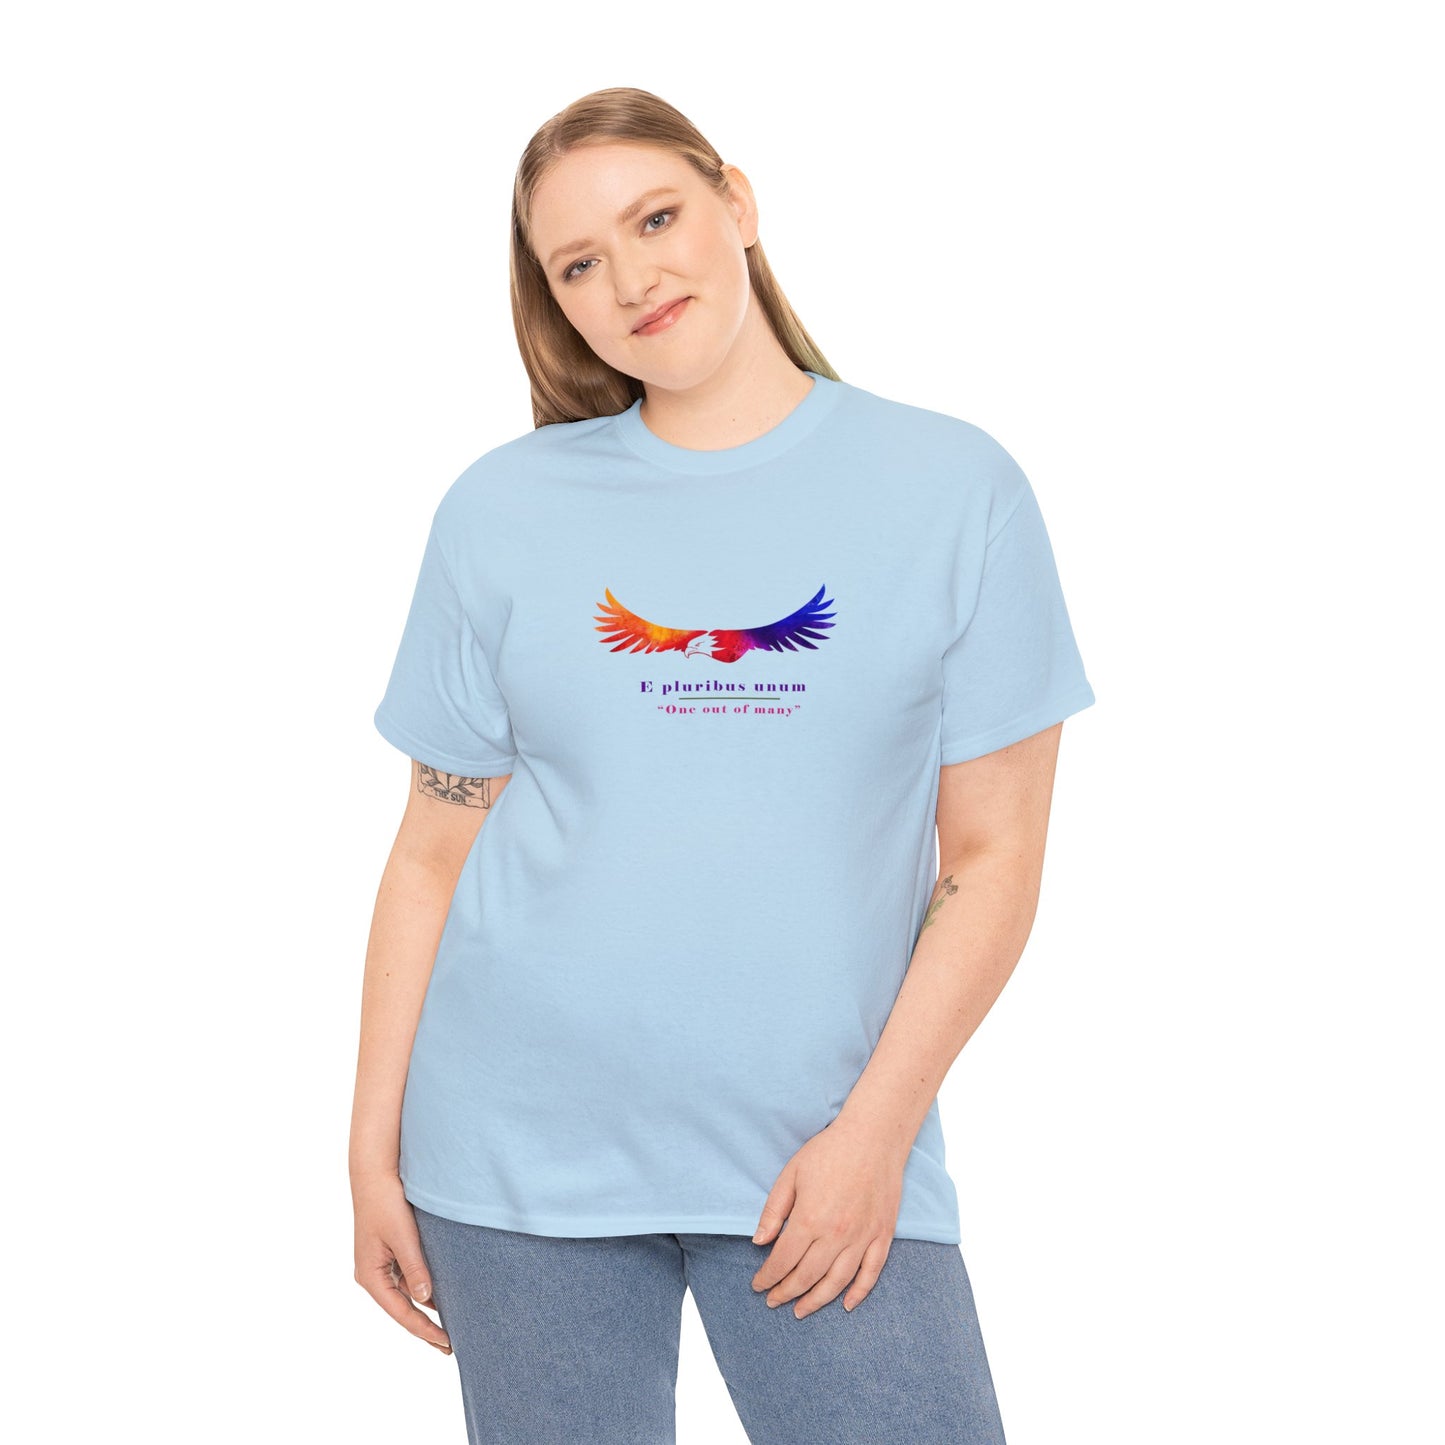 Proud Patriot - E pluribus unum | Graphic T-shirt